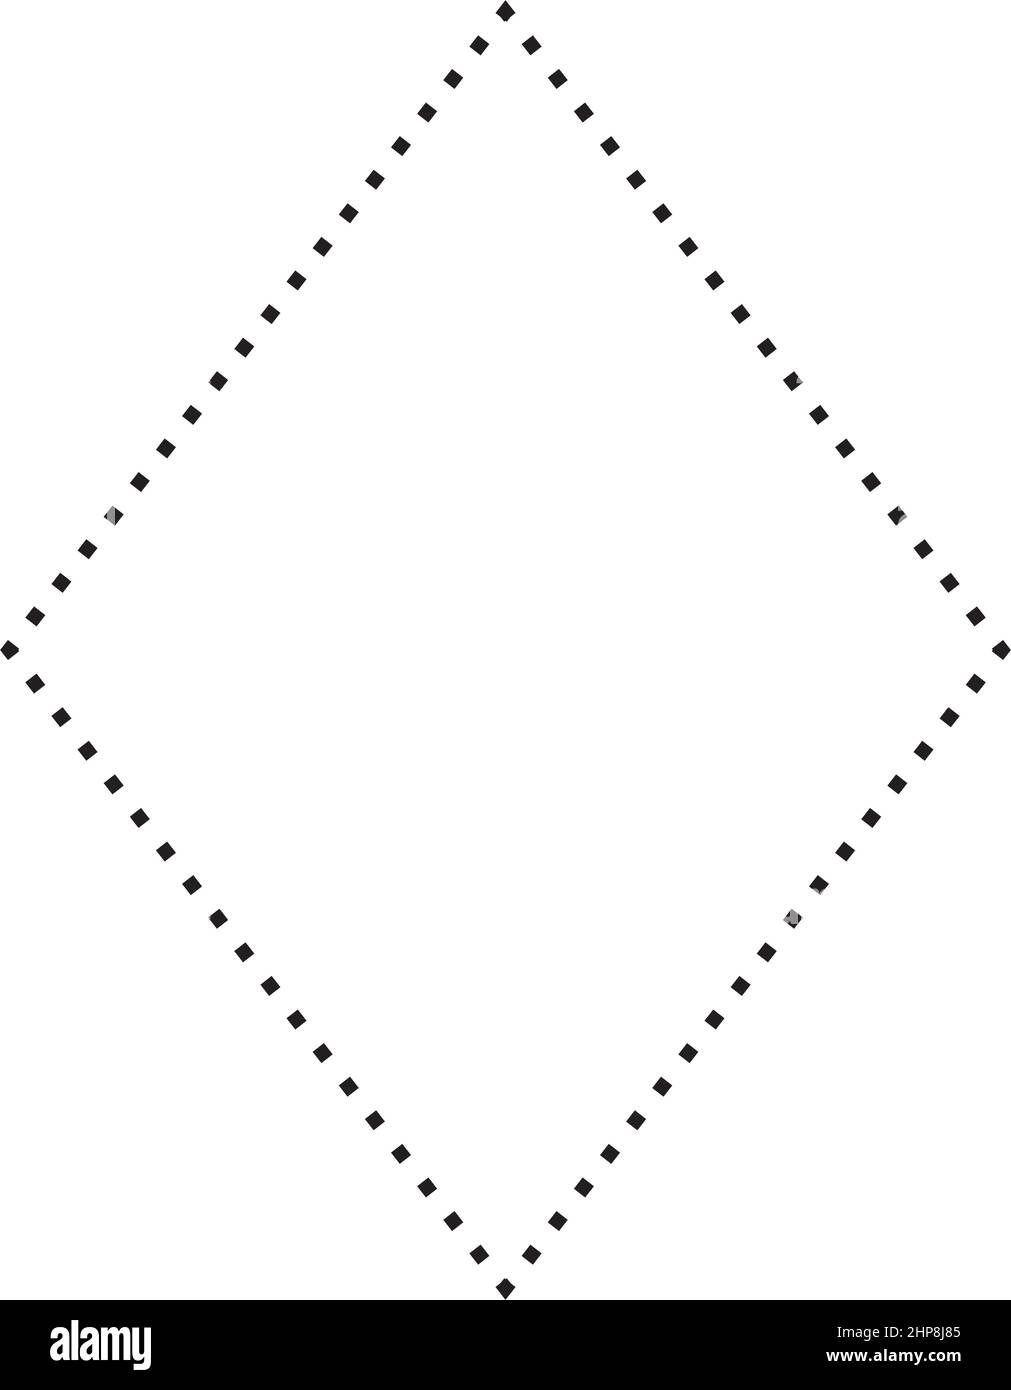 Rhombus-Form gepunktetes Symbol Vektor-Symbol für kreatives grafisches Design ui-Element in einer Piktogramm-Illustration Stock Vektor